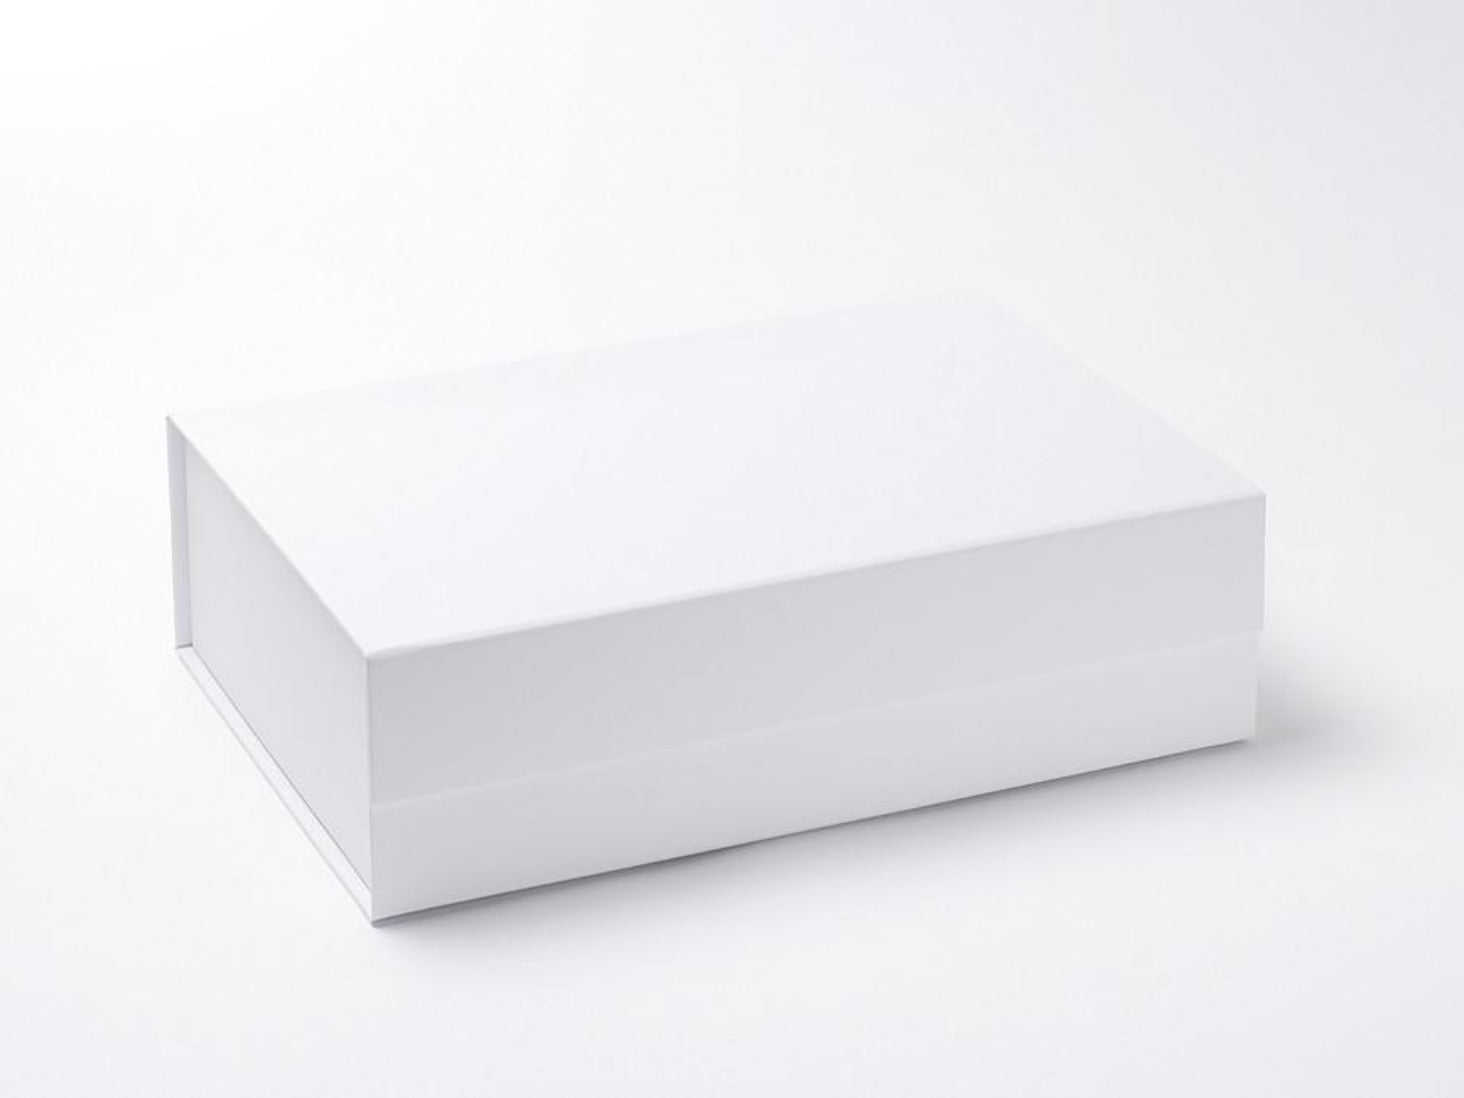 🔥NEW LOUIS VUITTON Magnetic Empty Box 10x10x5 Ribbon Envelope Gift Set